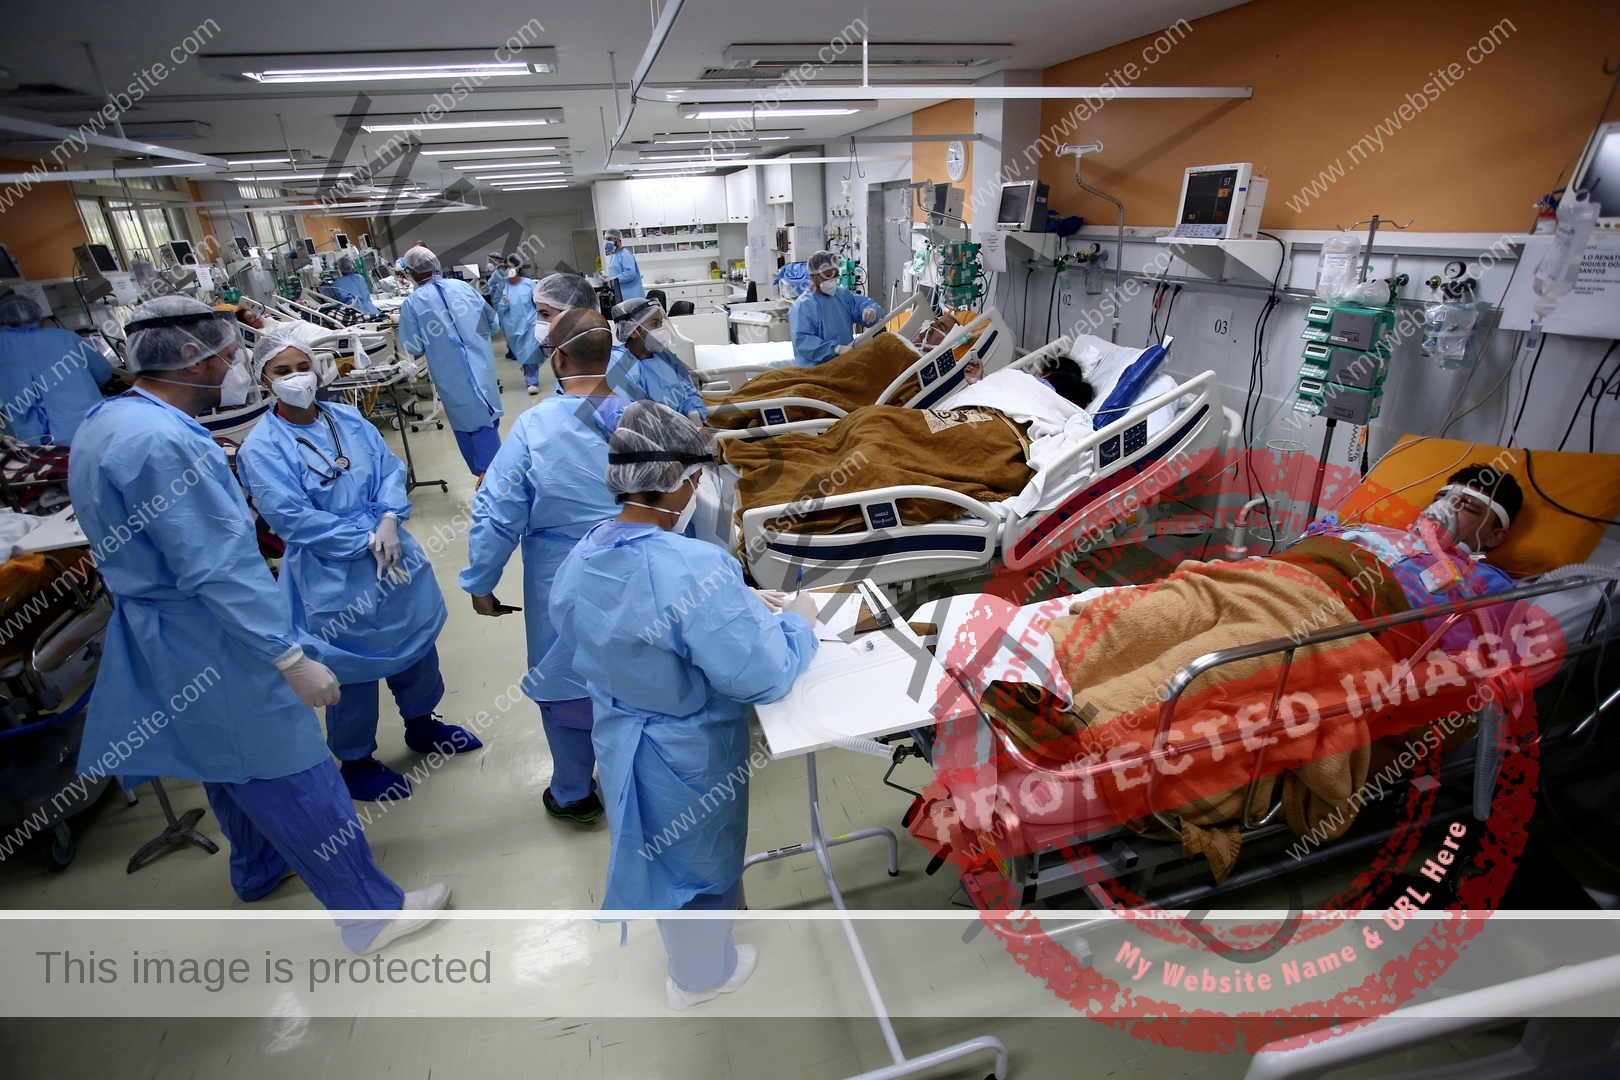 الصحة البرازيلية: تسجيل 3355 إصابة جديدة بـ كورونا و53 حالة وفاة خلال الـ 24 ساعة الماضية